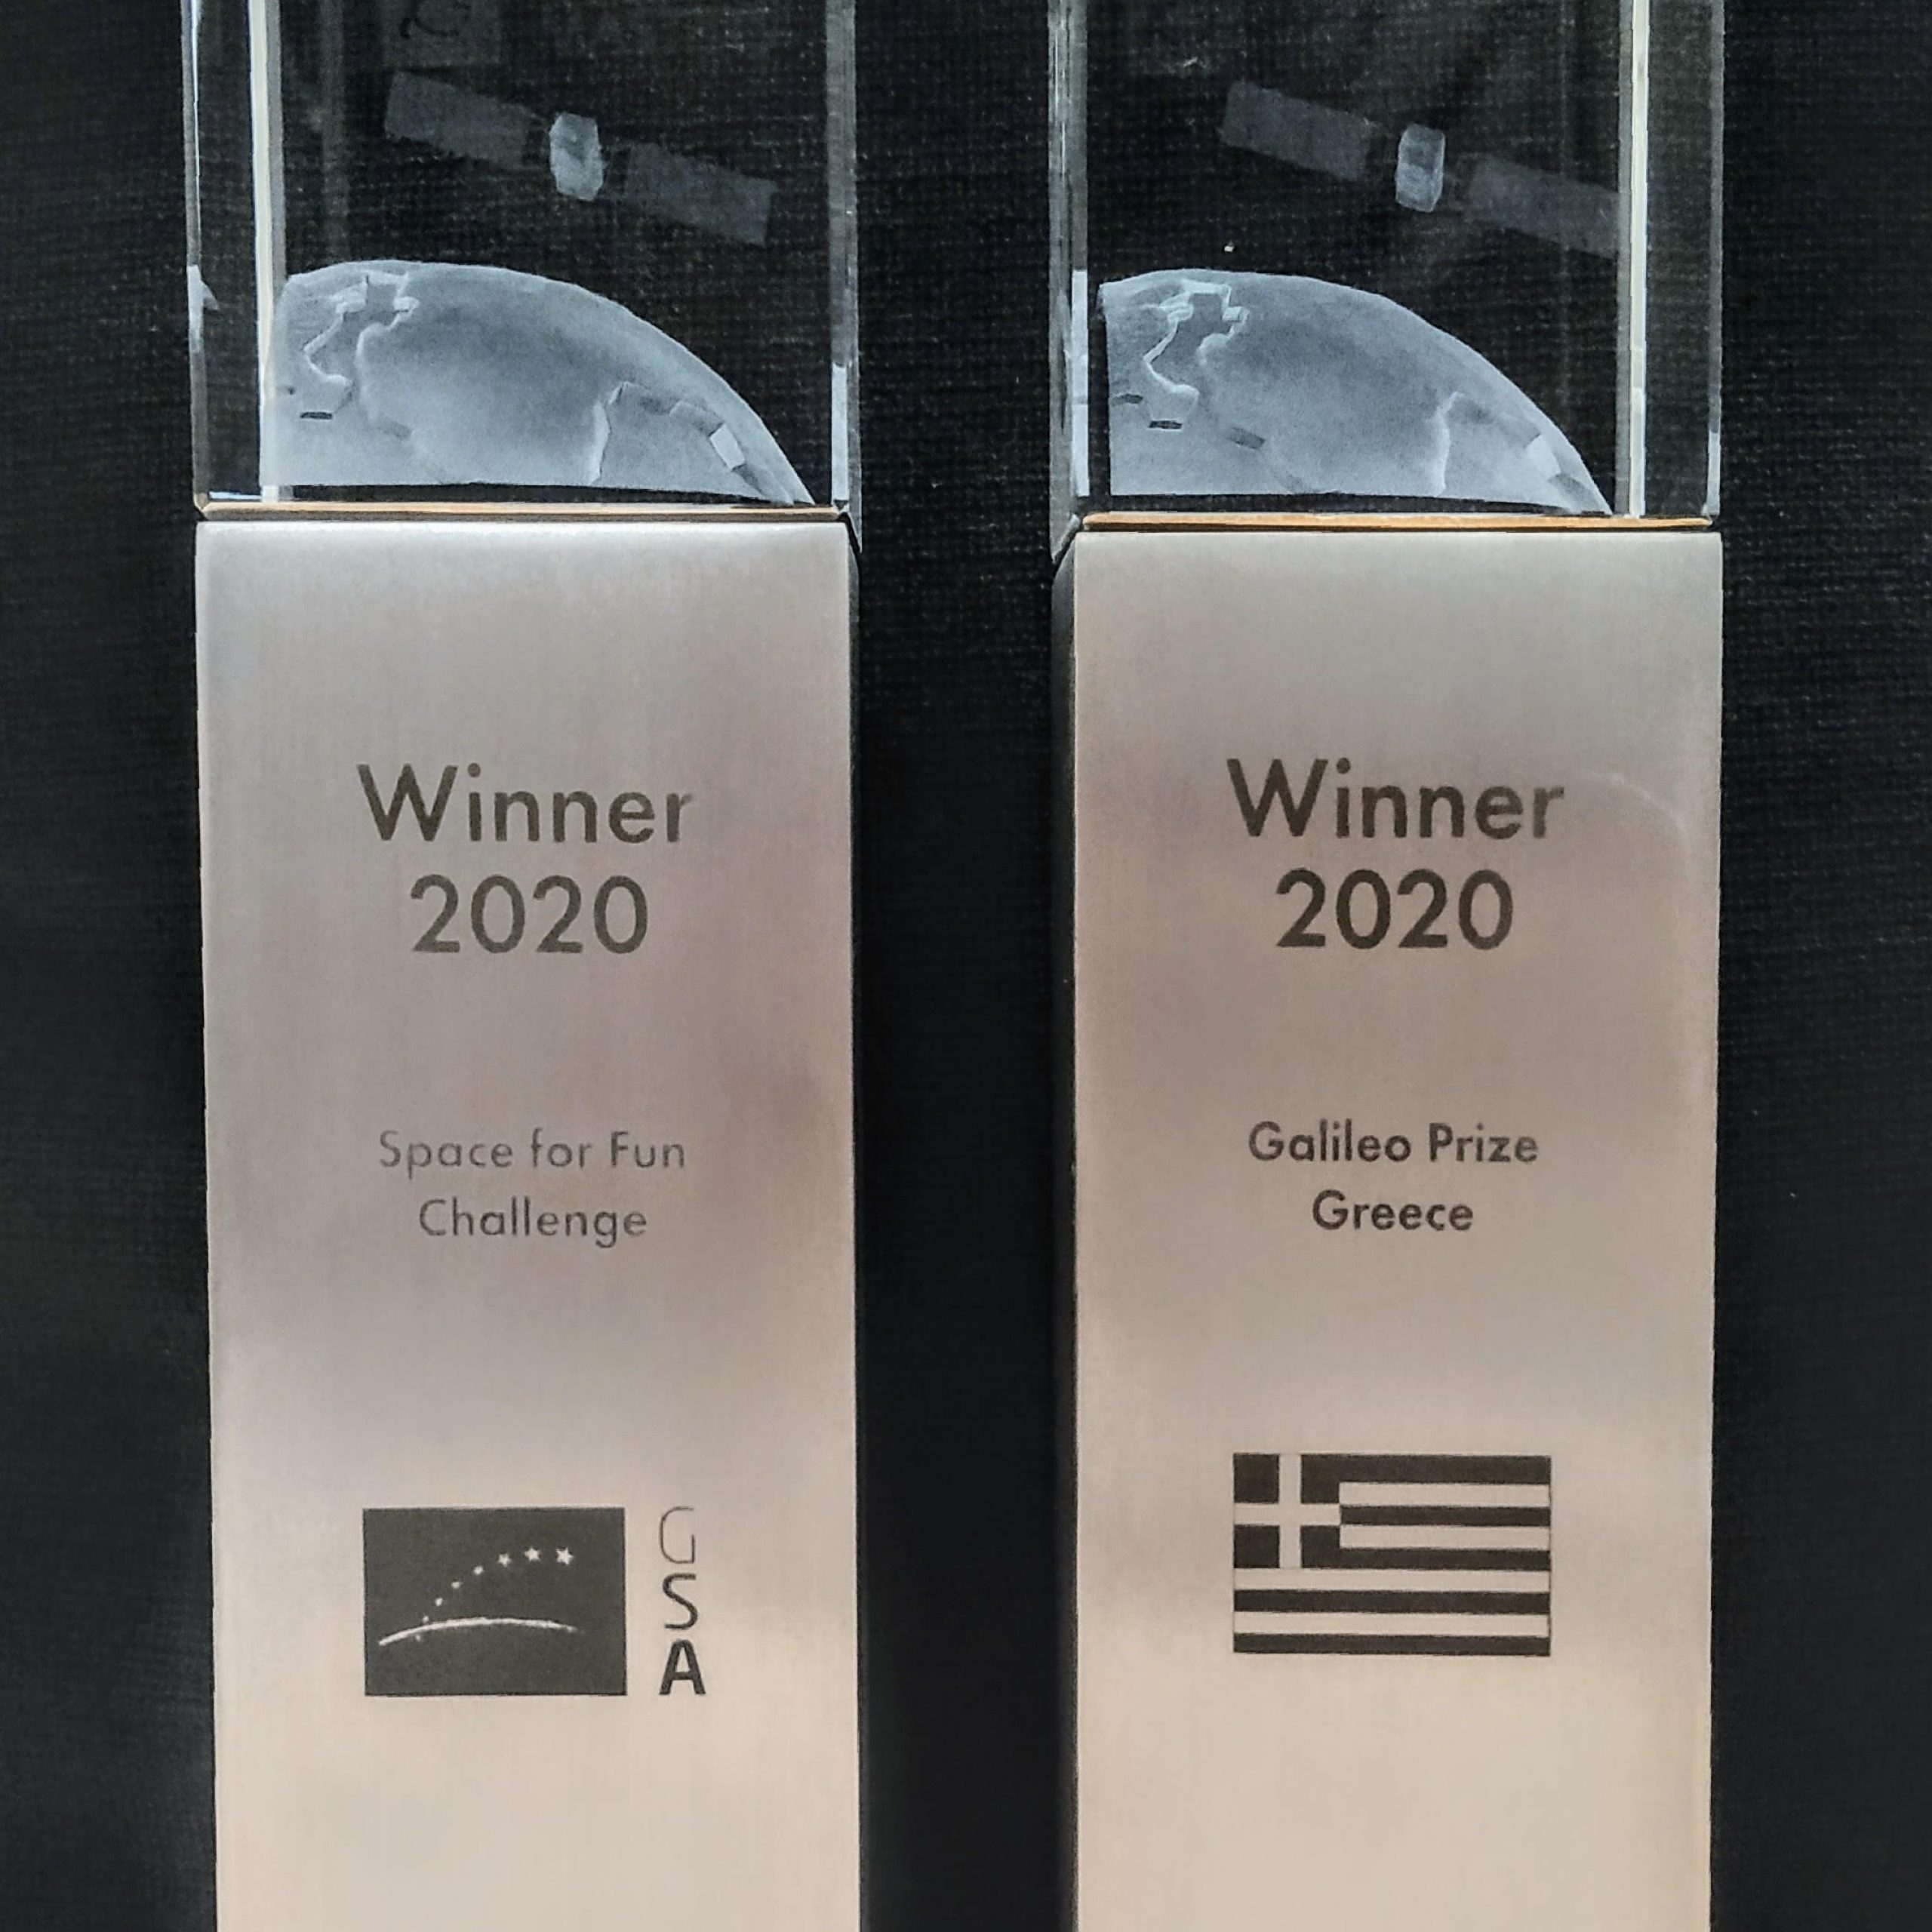 Prize – Galileo 2020